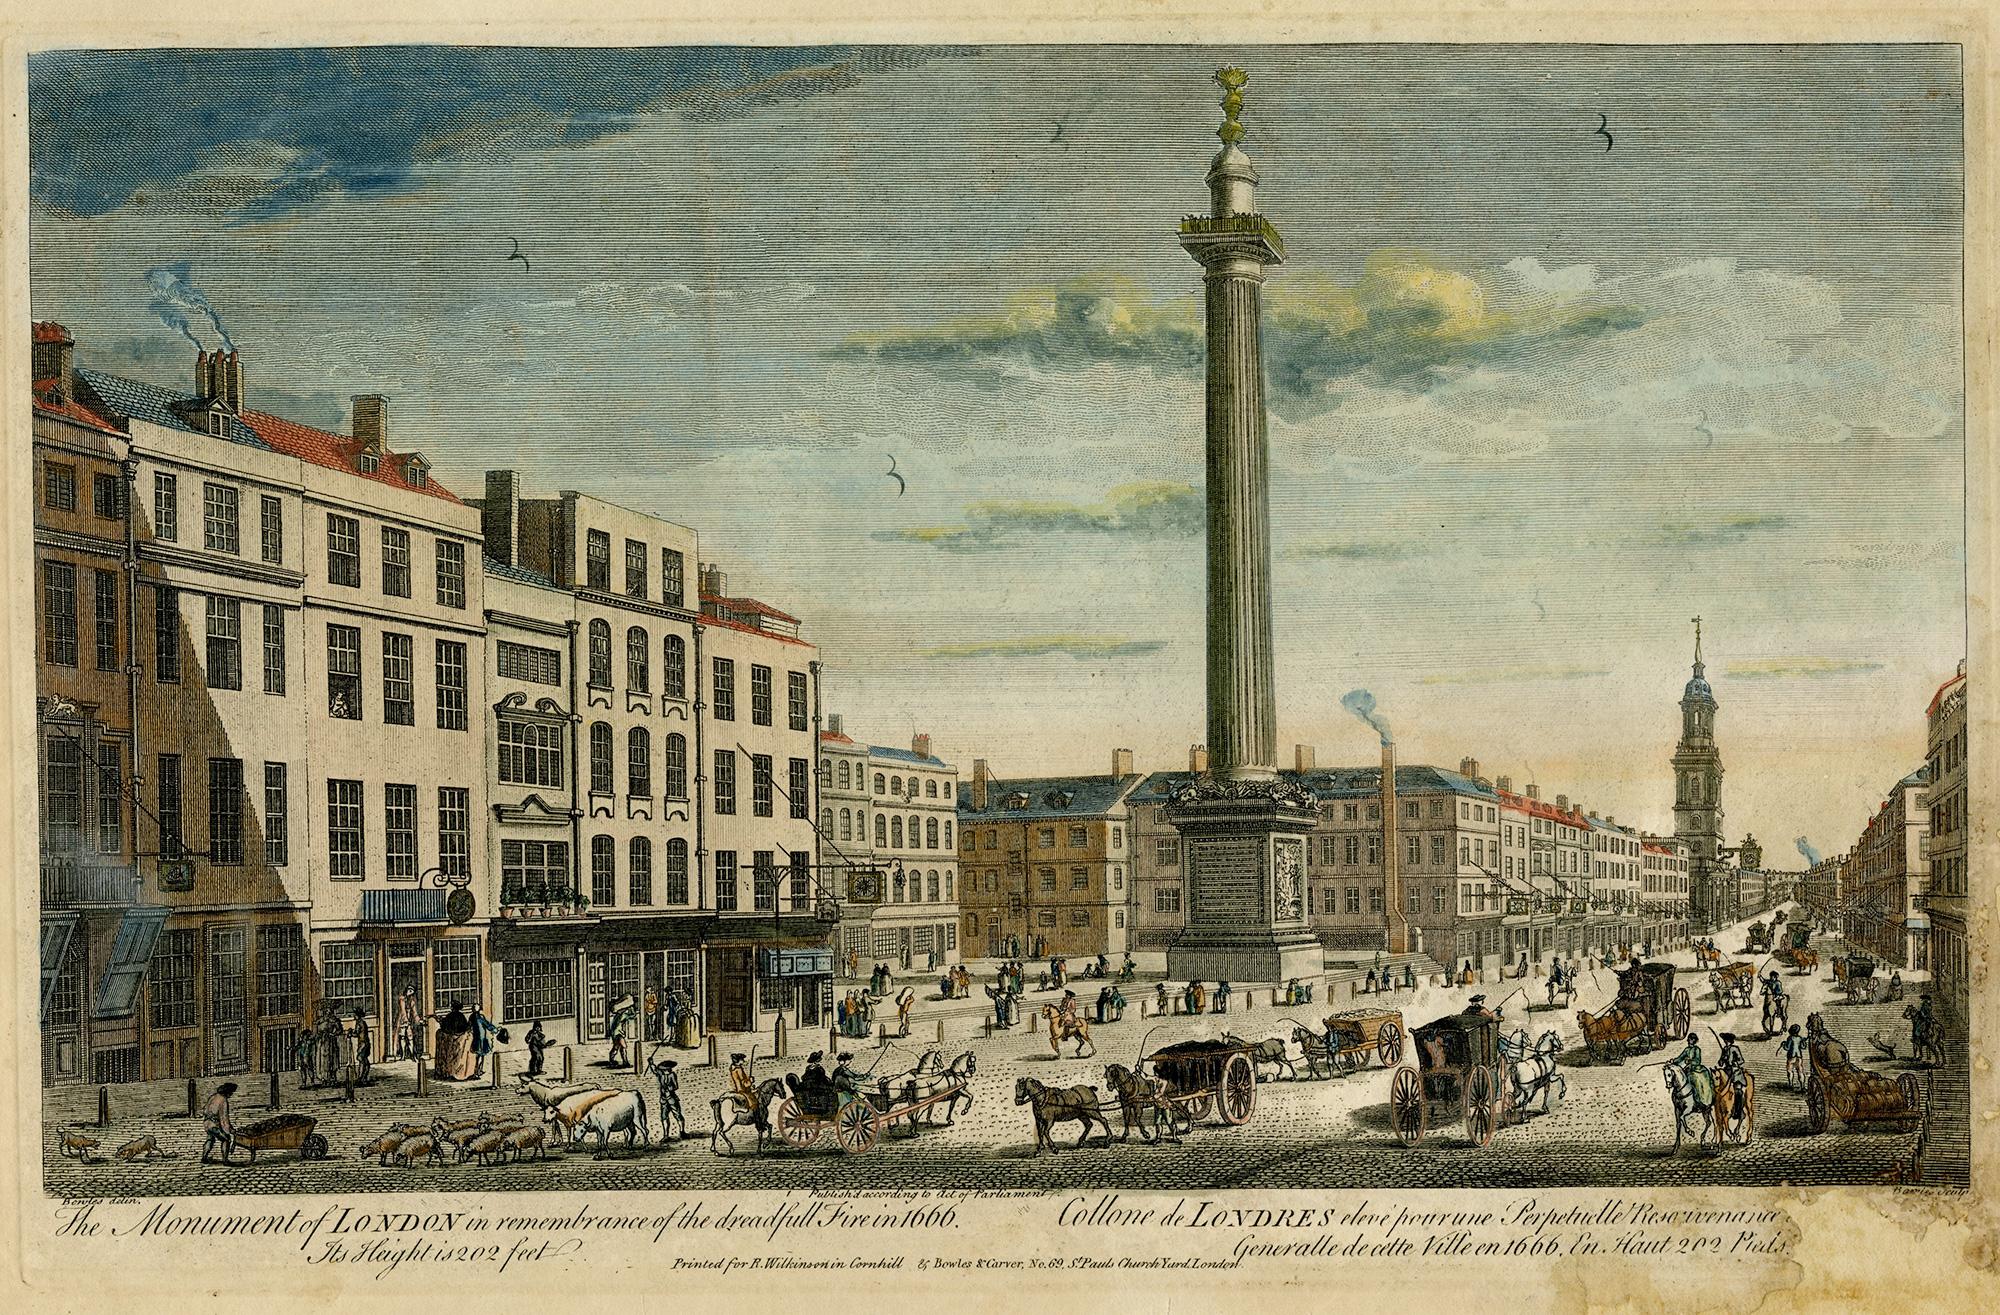 Le monument de Londres en hommage au redoutable incendie de 1666